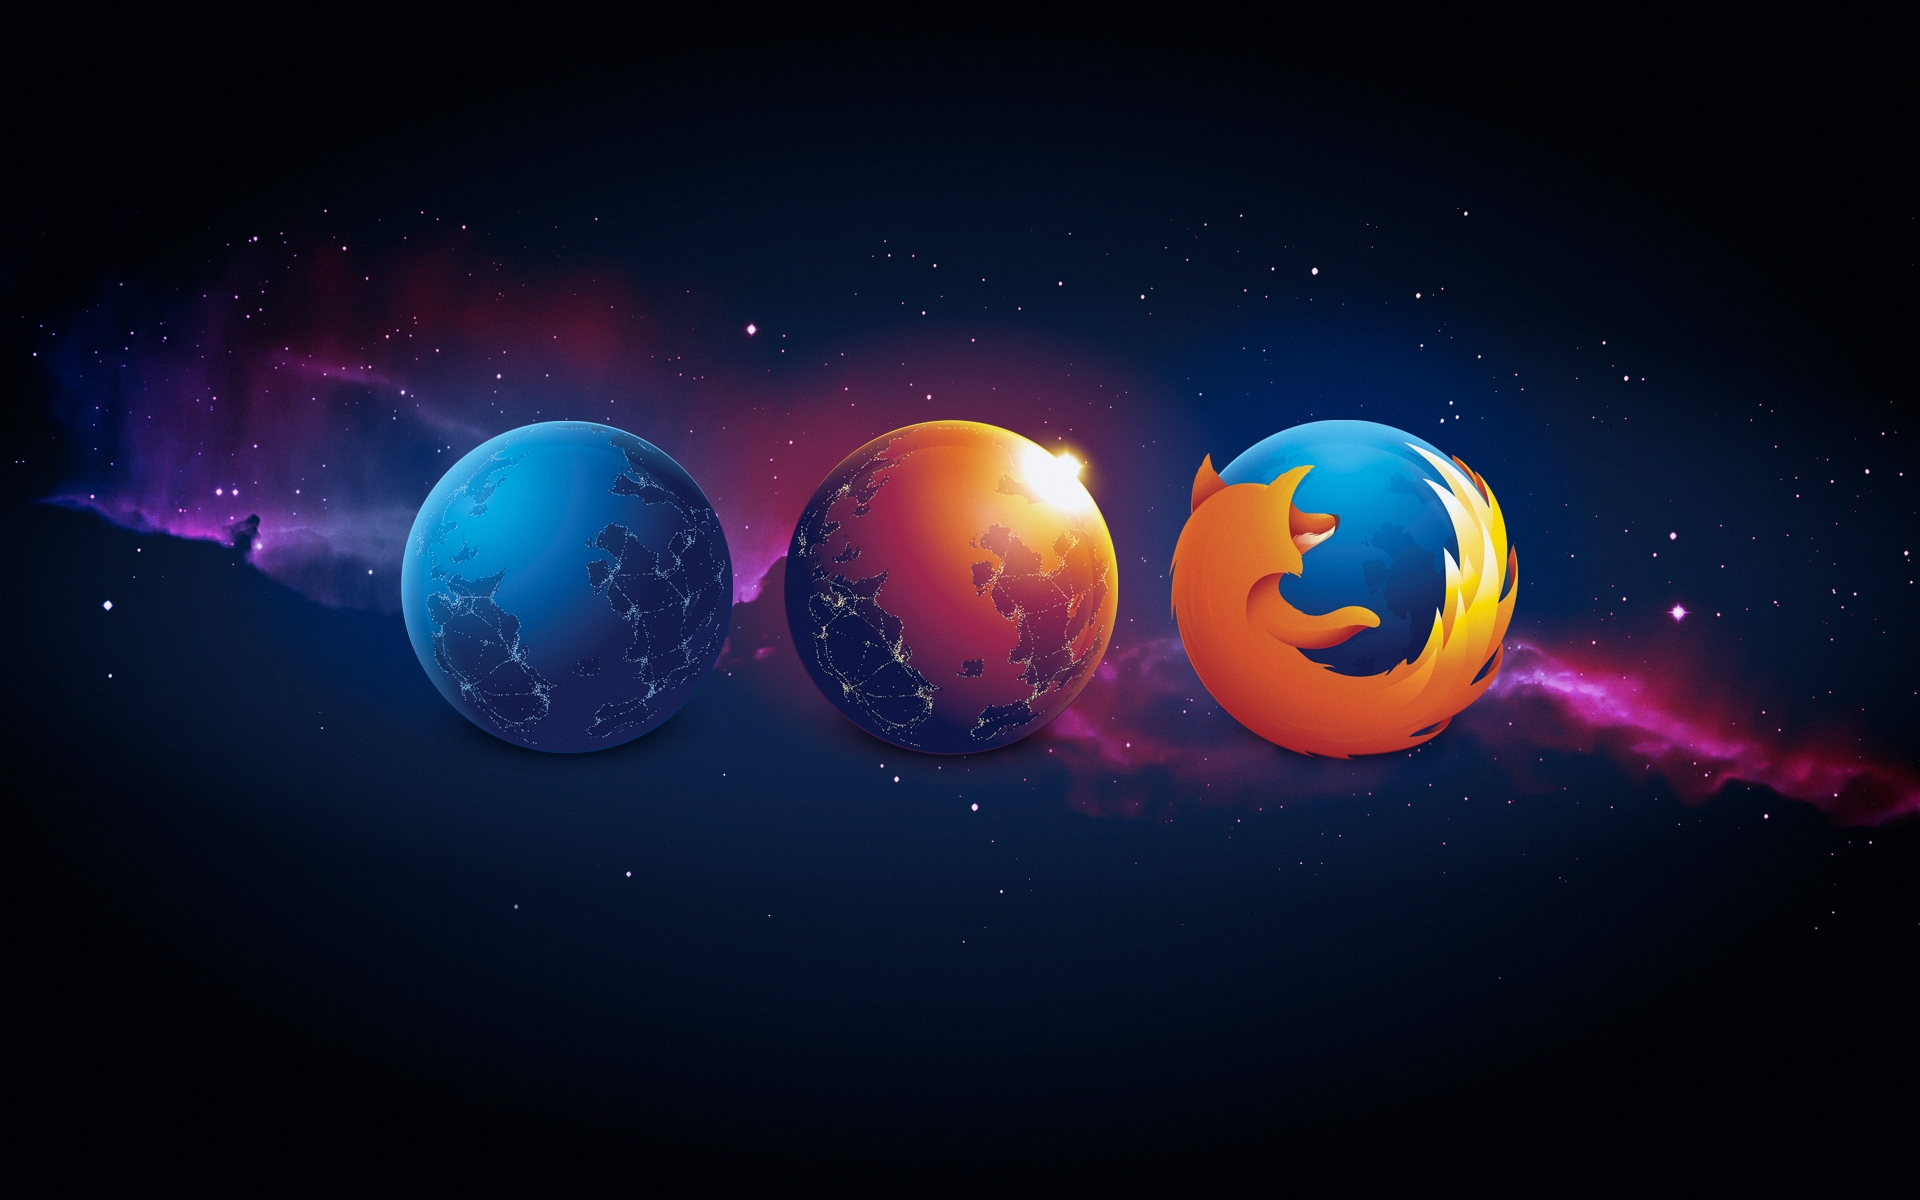 Mozilla Firefox фото